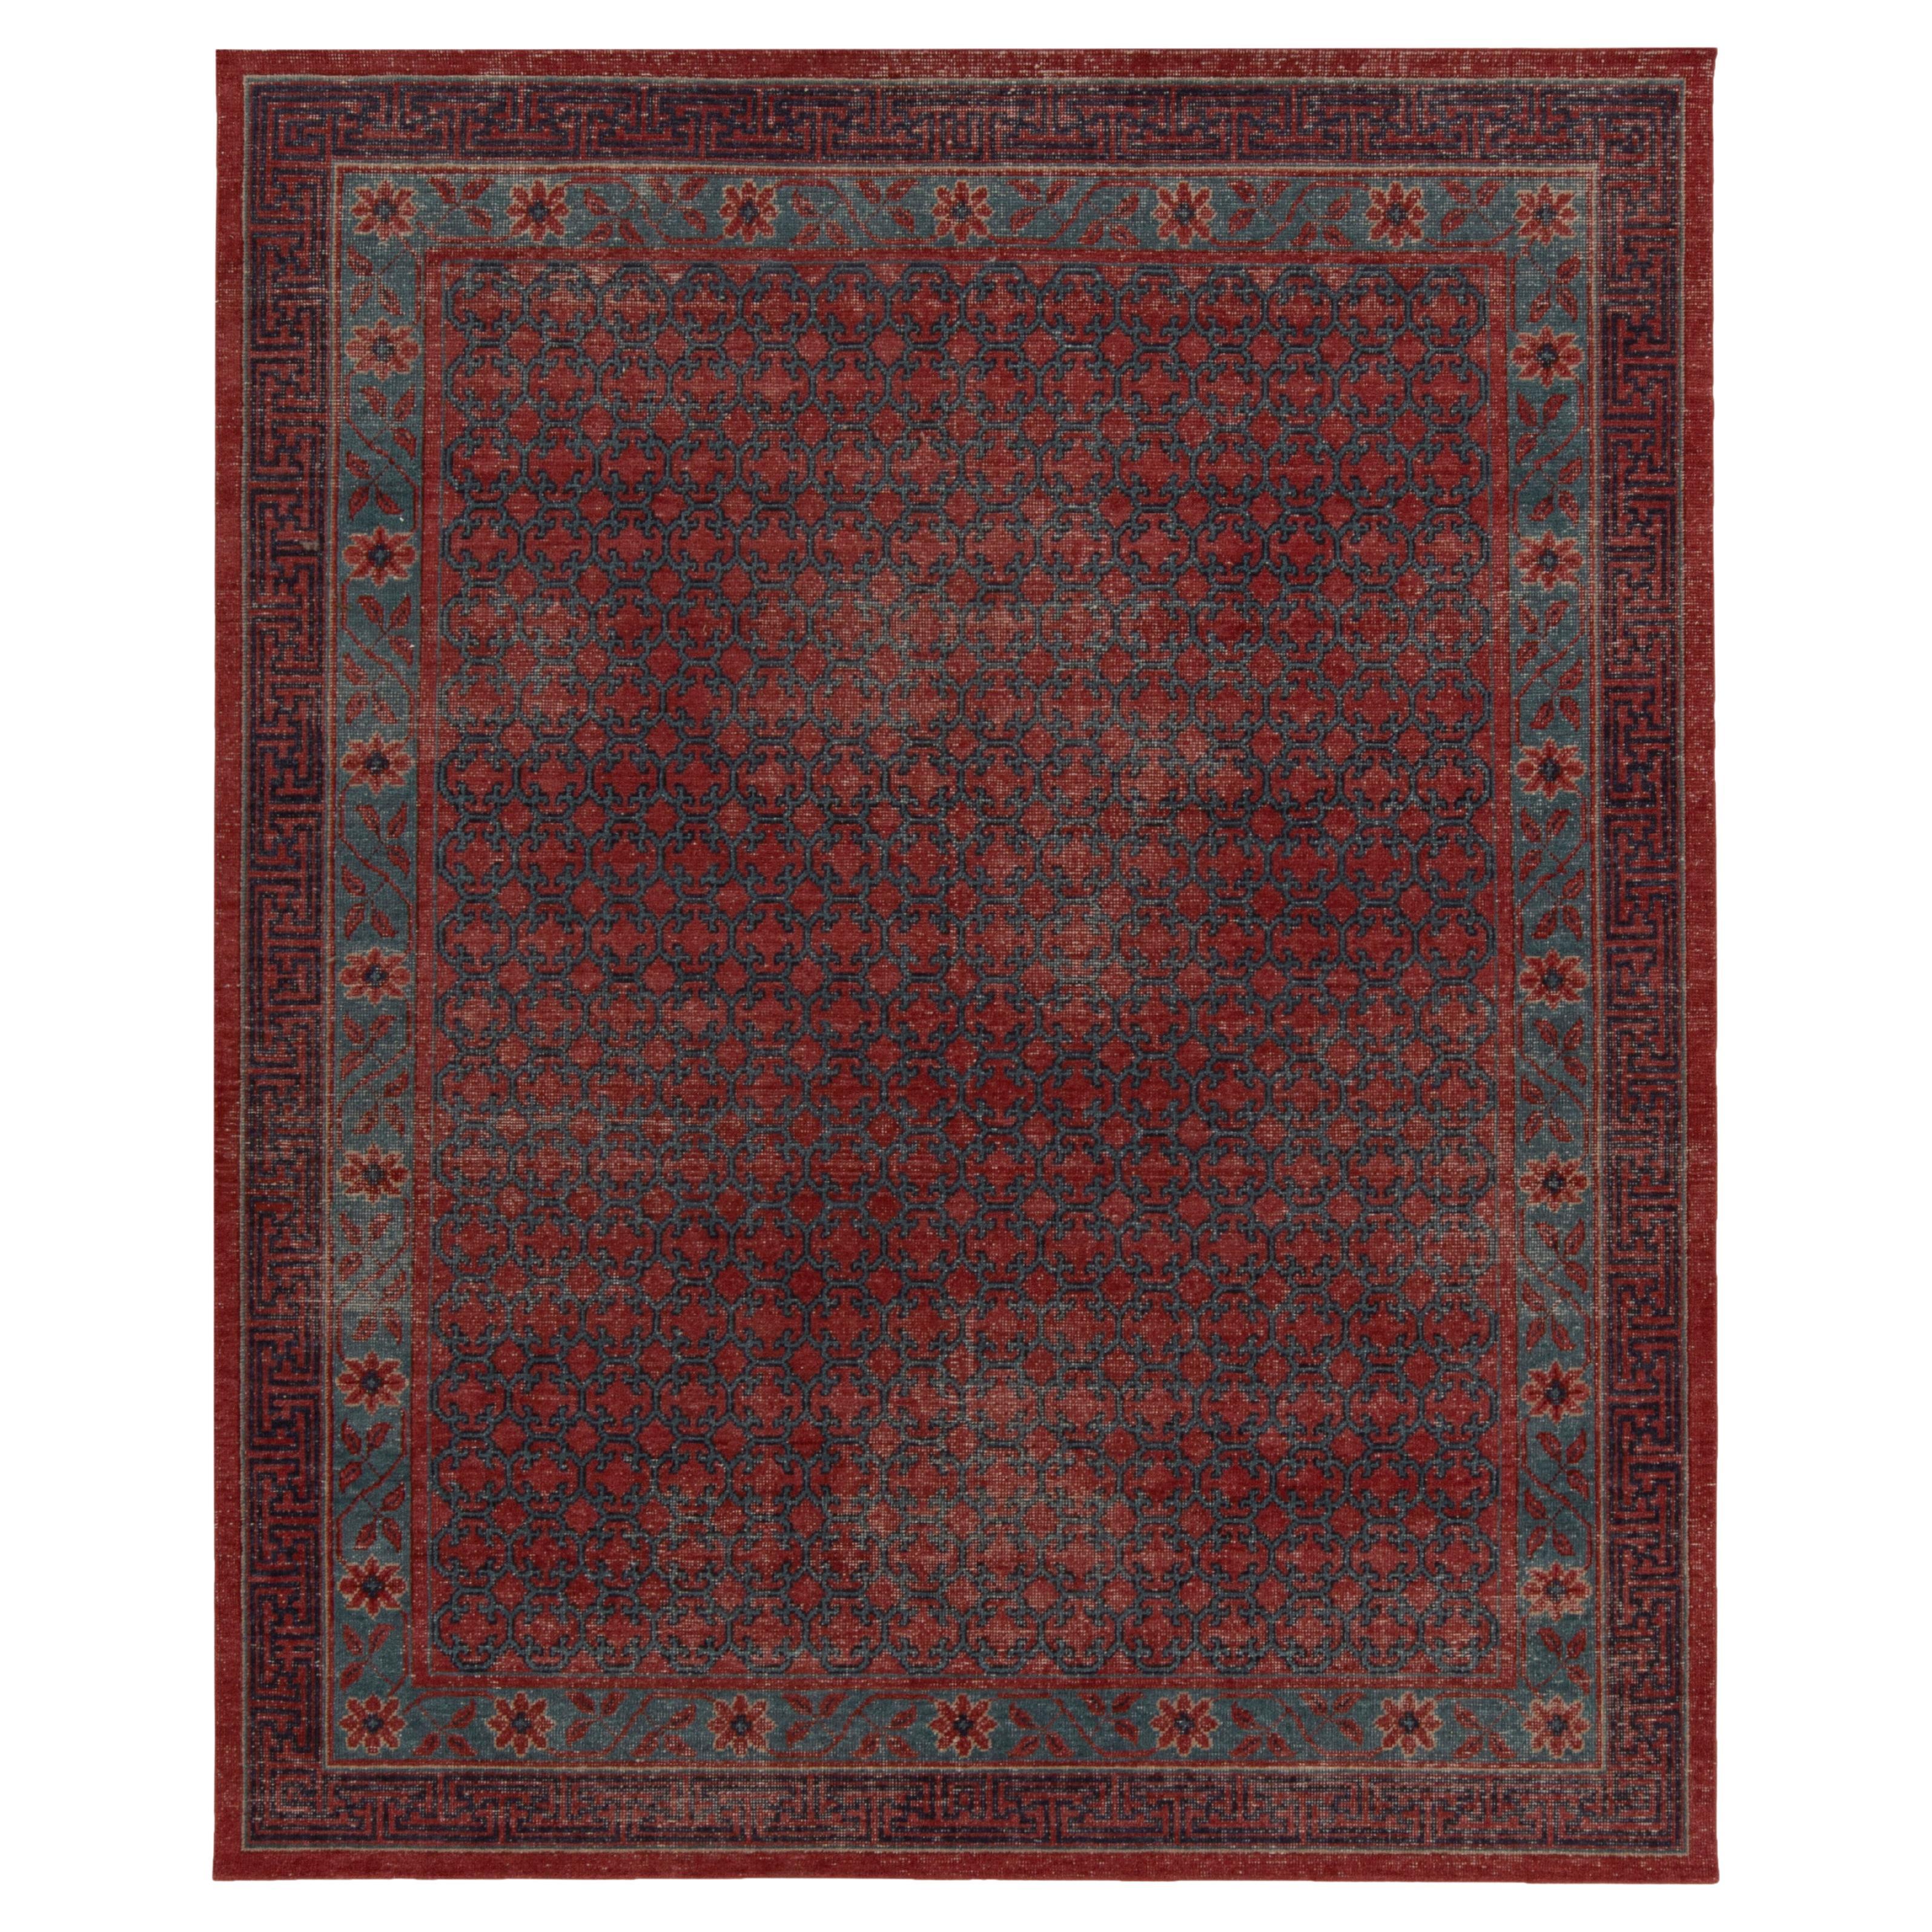 Teppich & Kilims Distressed Khotan-Teppich im Stil von Teppich in Rot und Blau mit Spaliermuster